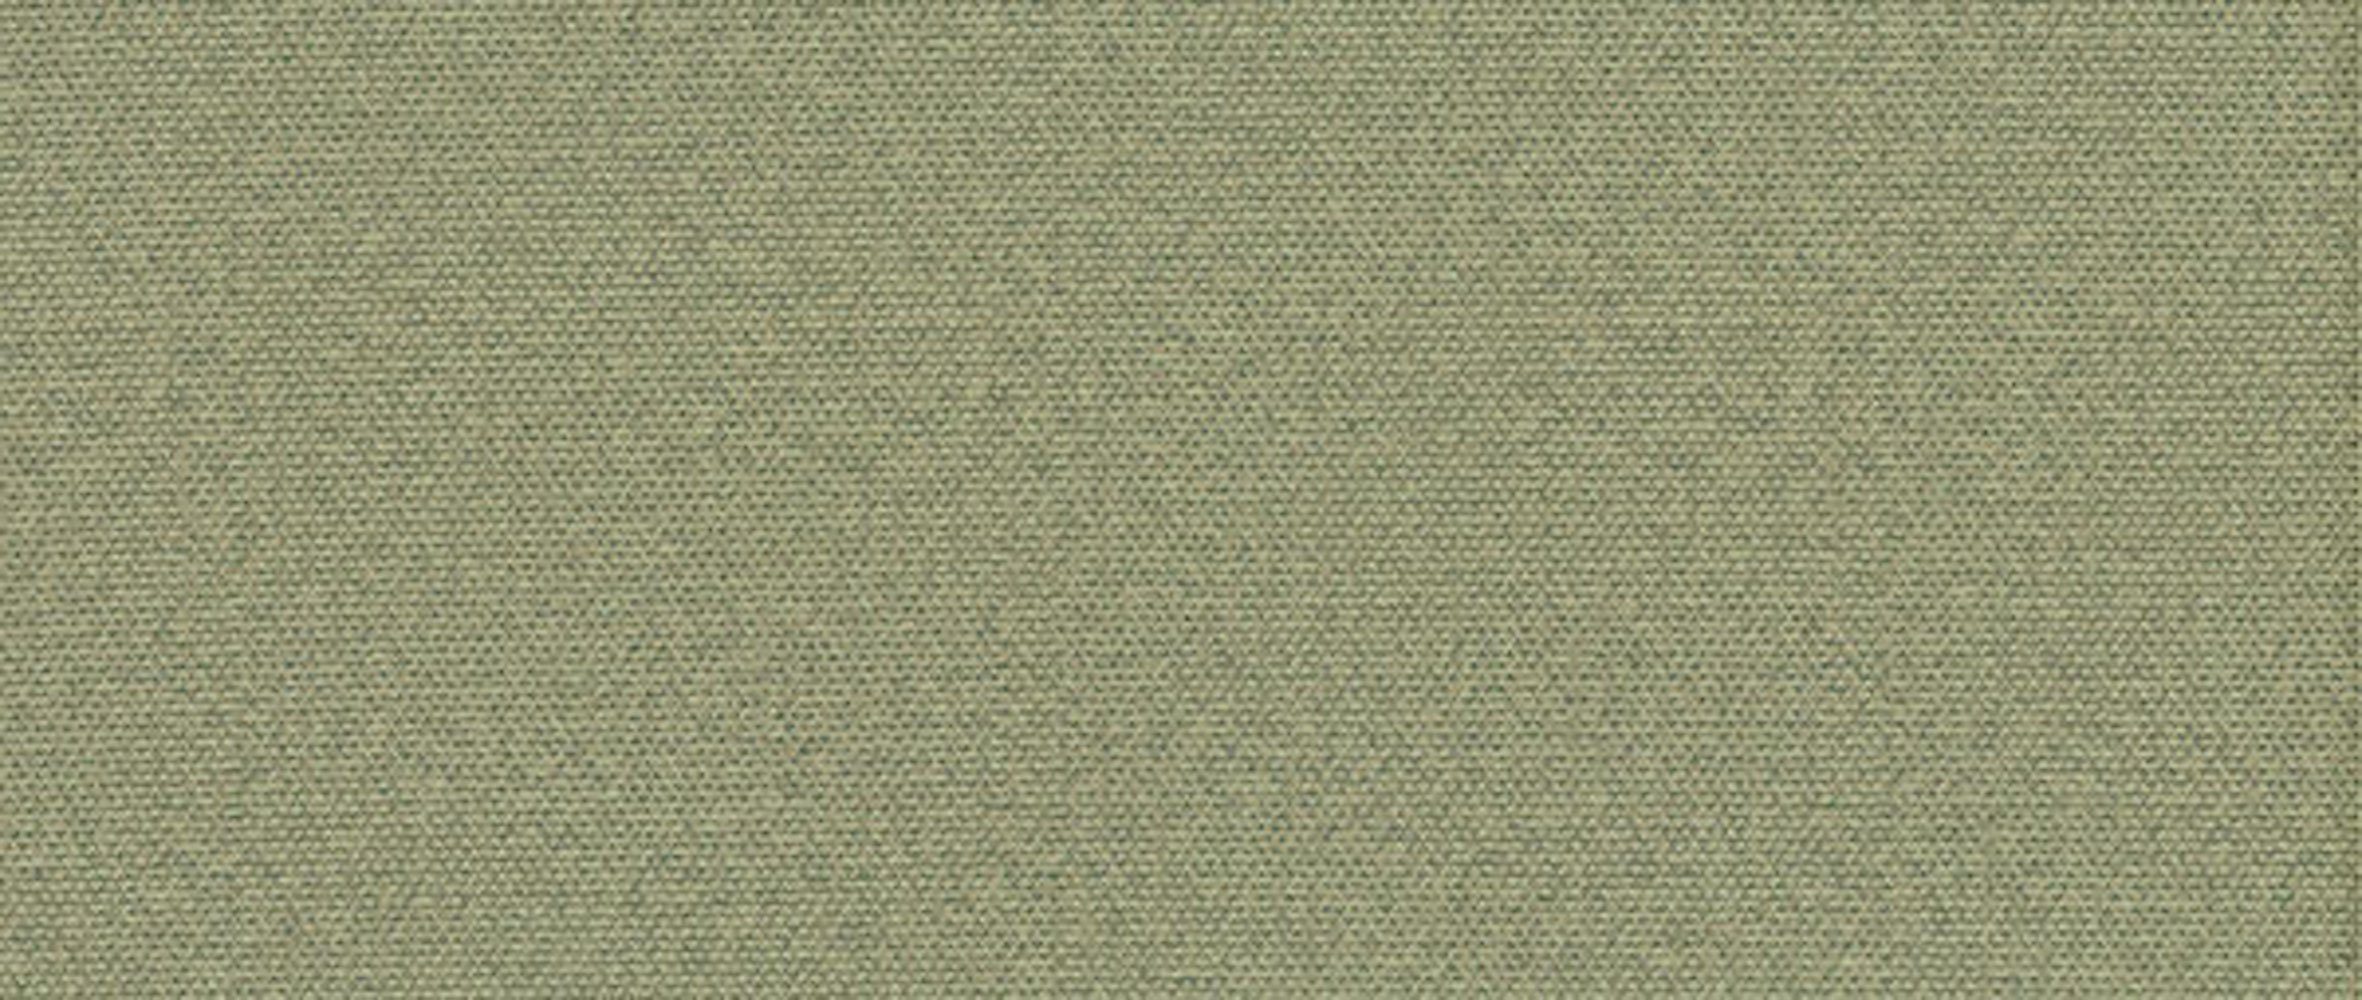 mit Feldmann-Wohnen Toronto, blassgrün Schlaffunktion Sofa Farbe Bettkasten 226cm und wählbar